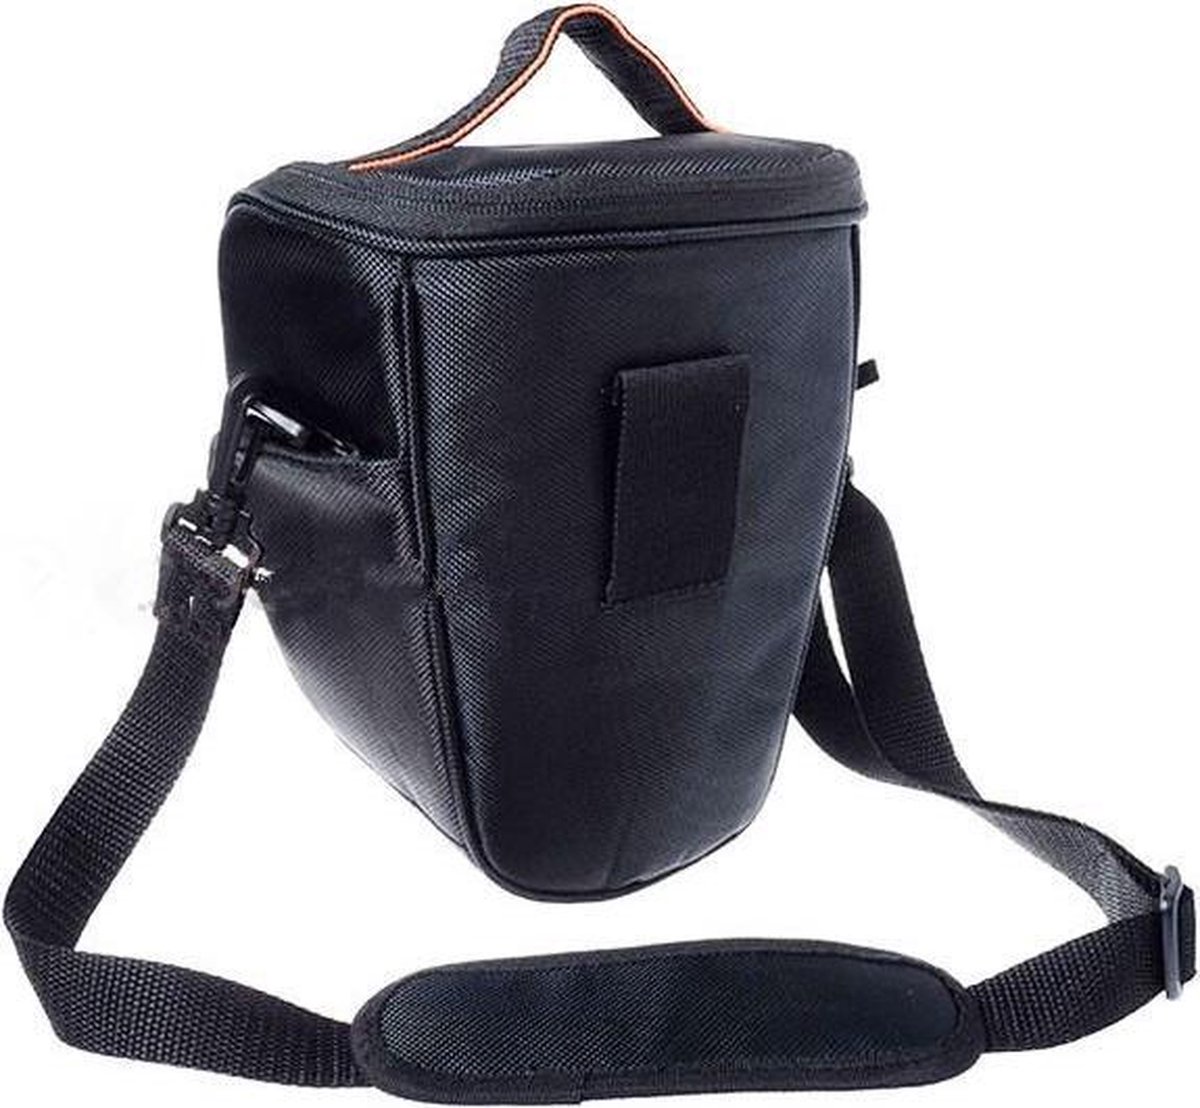 krans Recreatie Vermeend Camera tas tassen beschermhoes voor Canon Nikon Sony Camera | bol.com